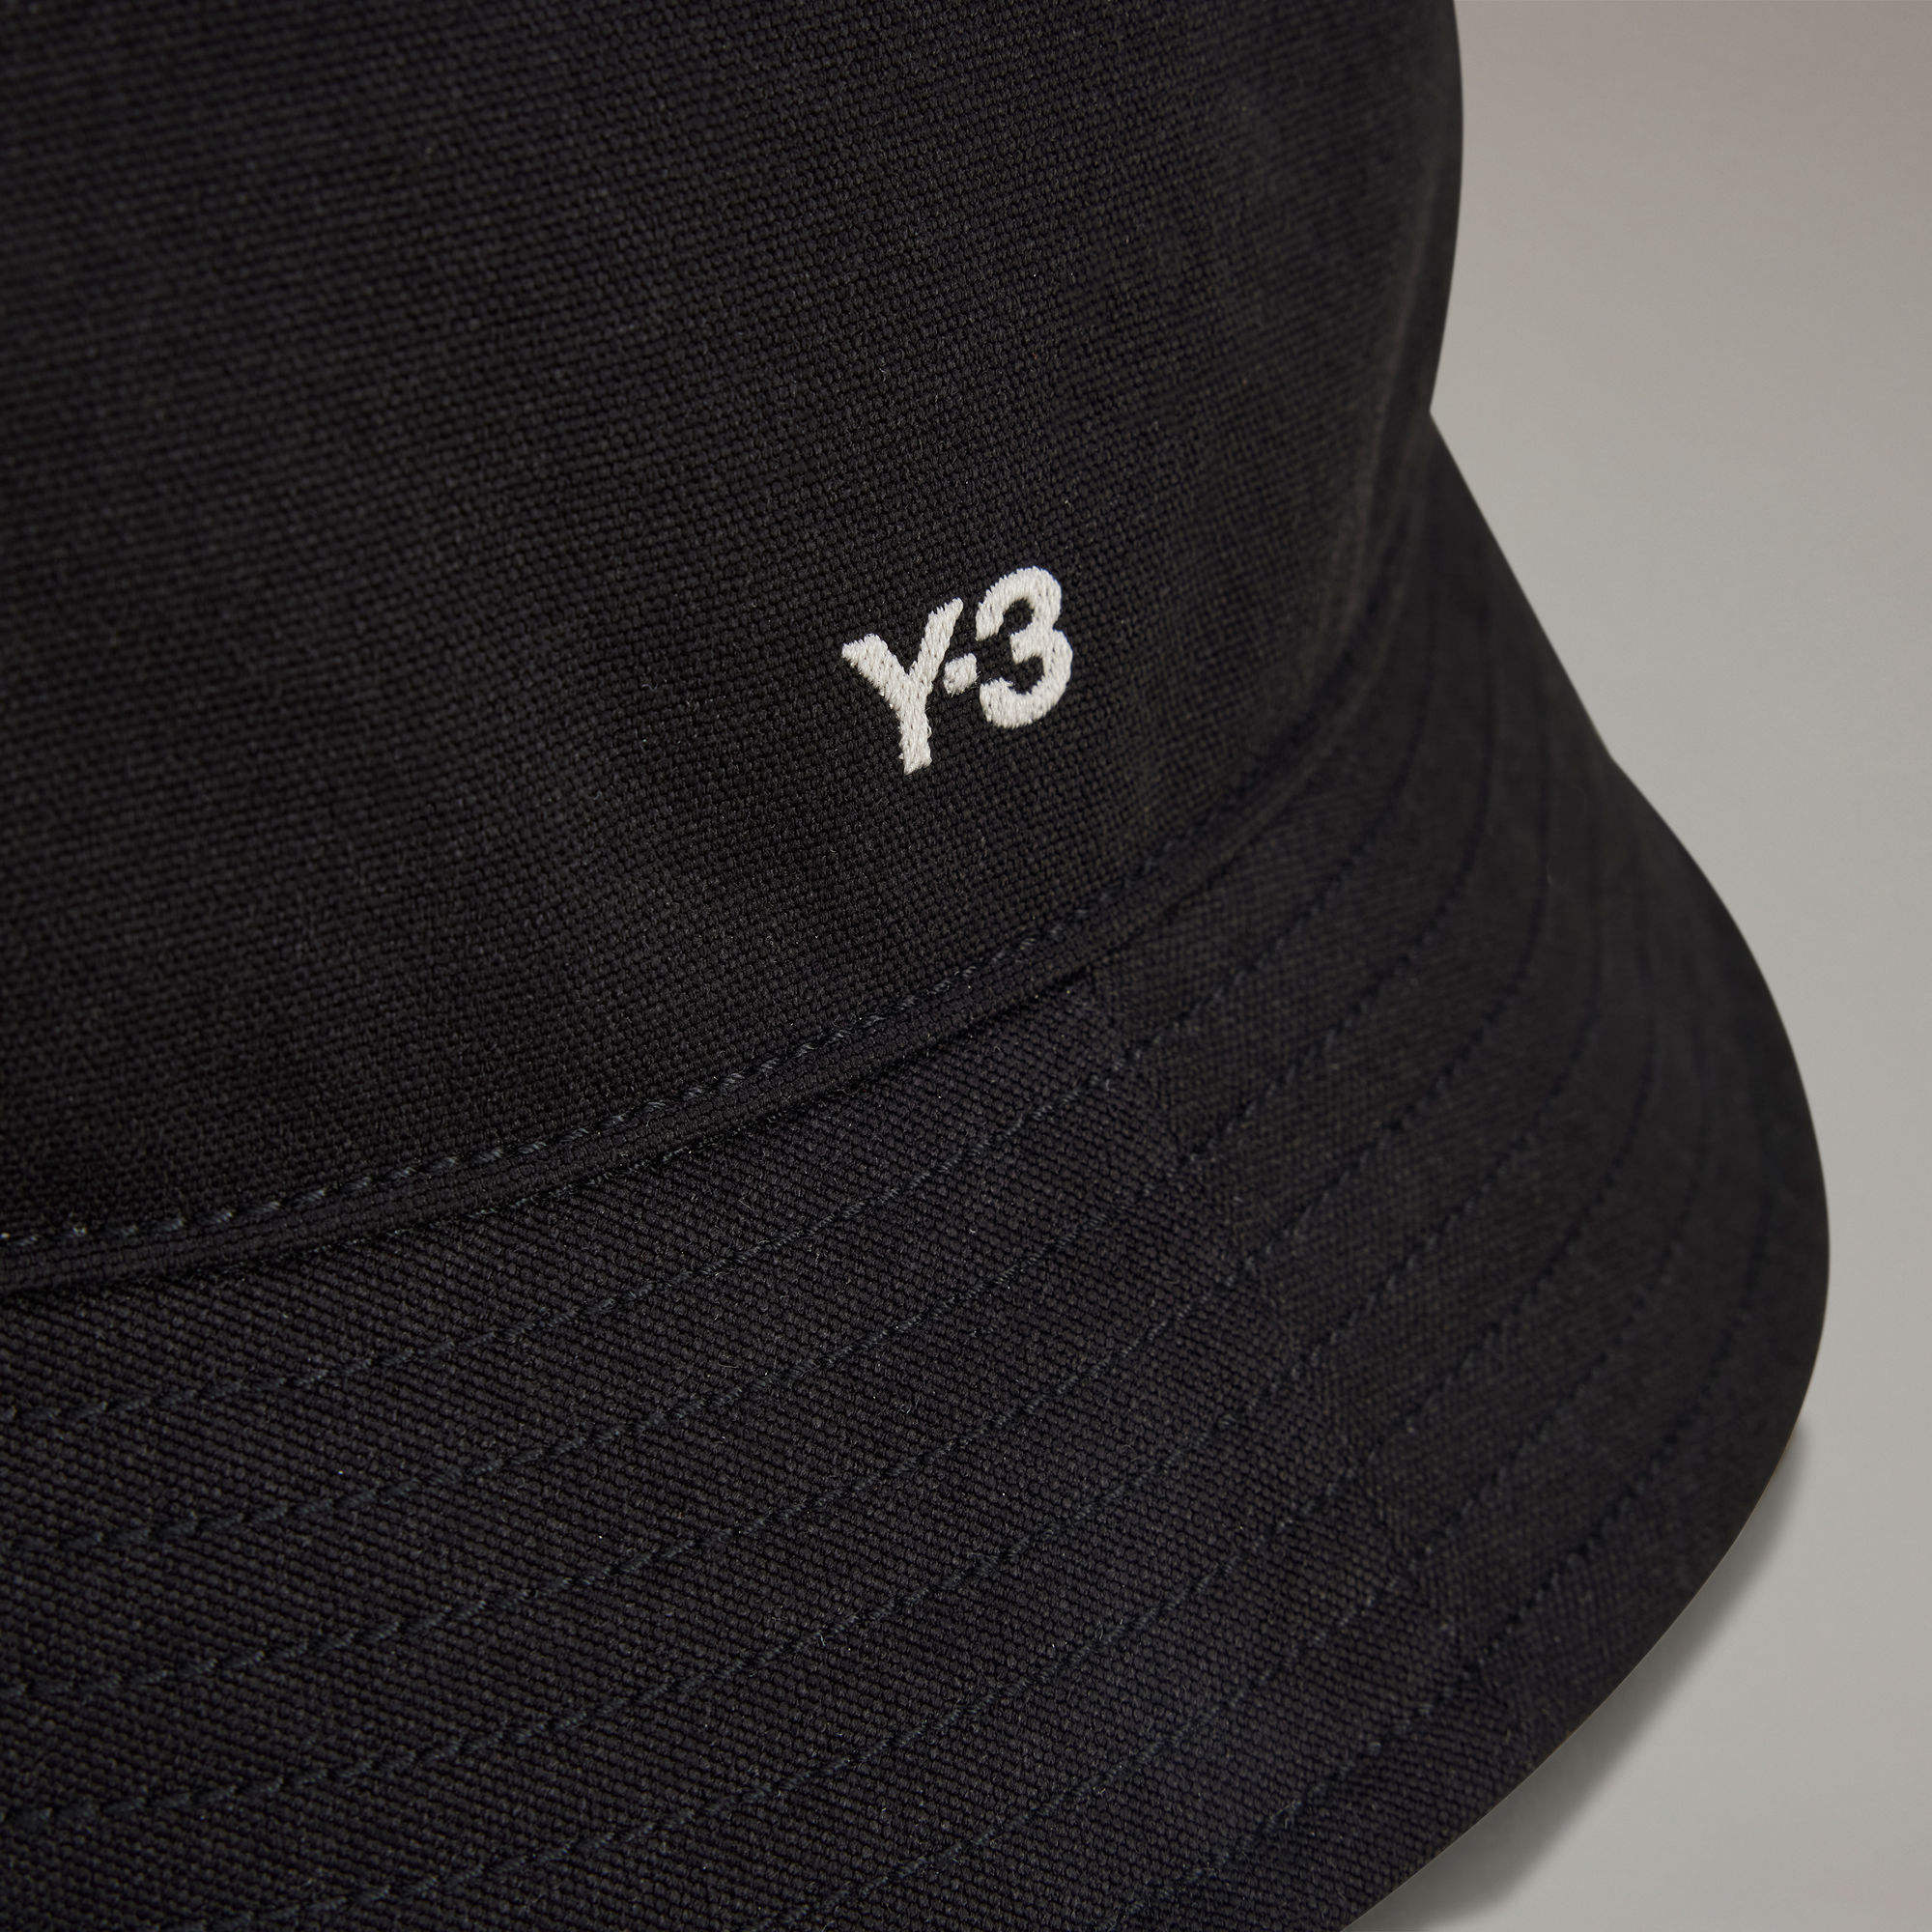 Y-3 漁夫帽- 黑色| 女子,男子| adidas(愛迪達)香港官方網上商店